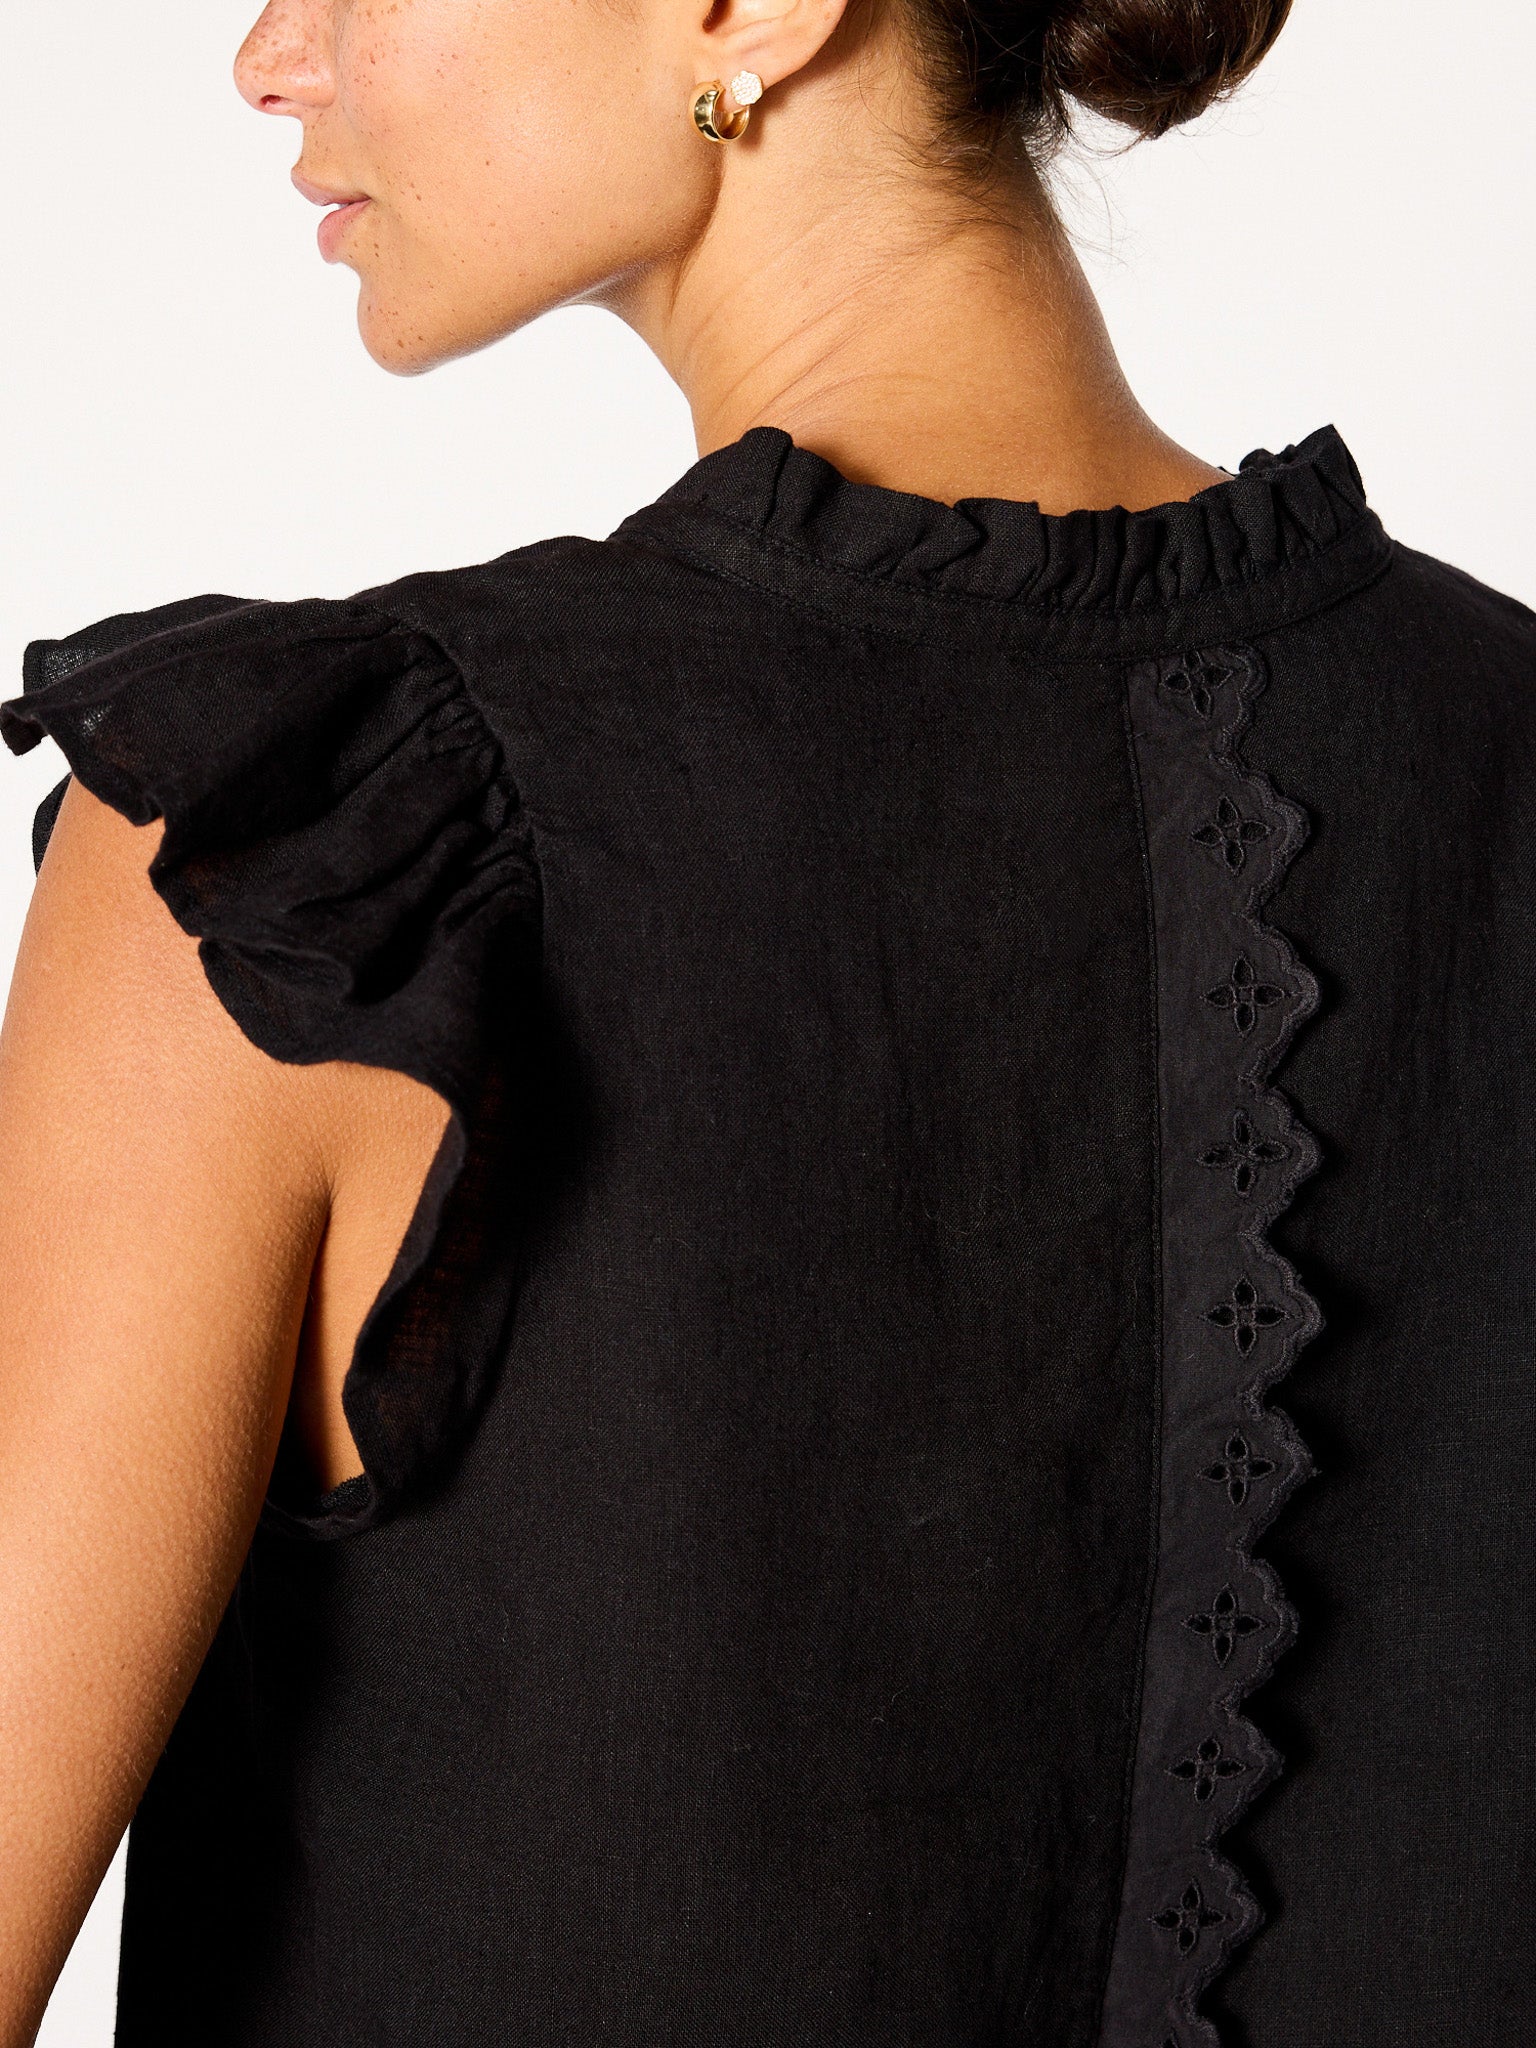 Devan black sleeveless linen v-neck eyelet blouse close up